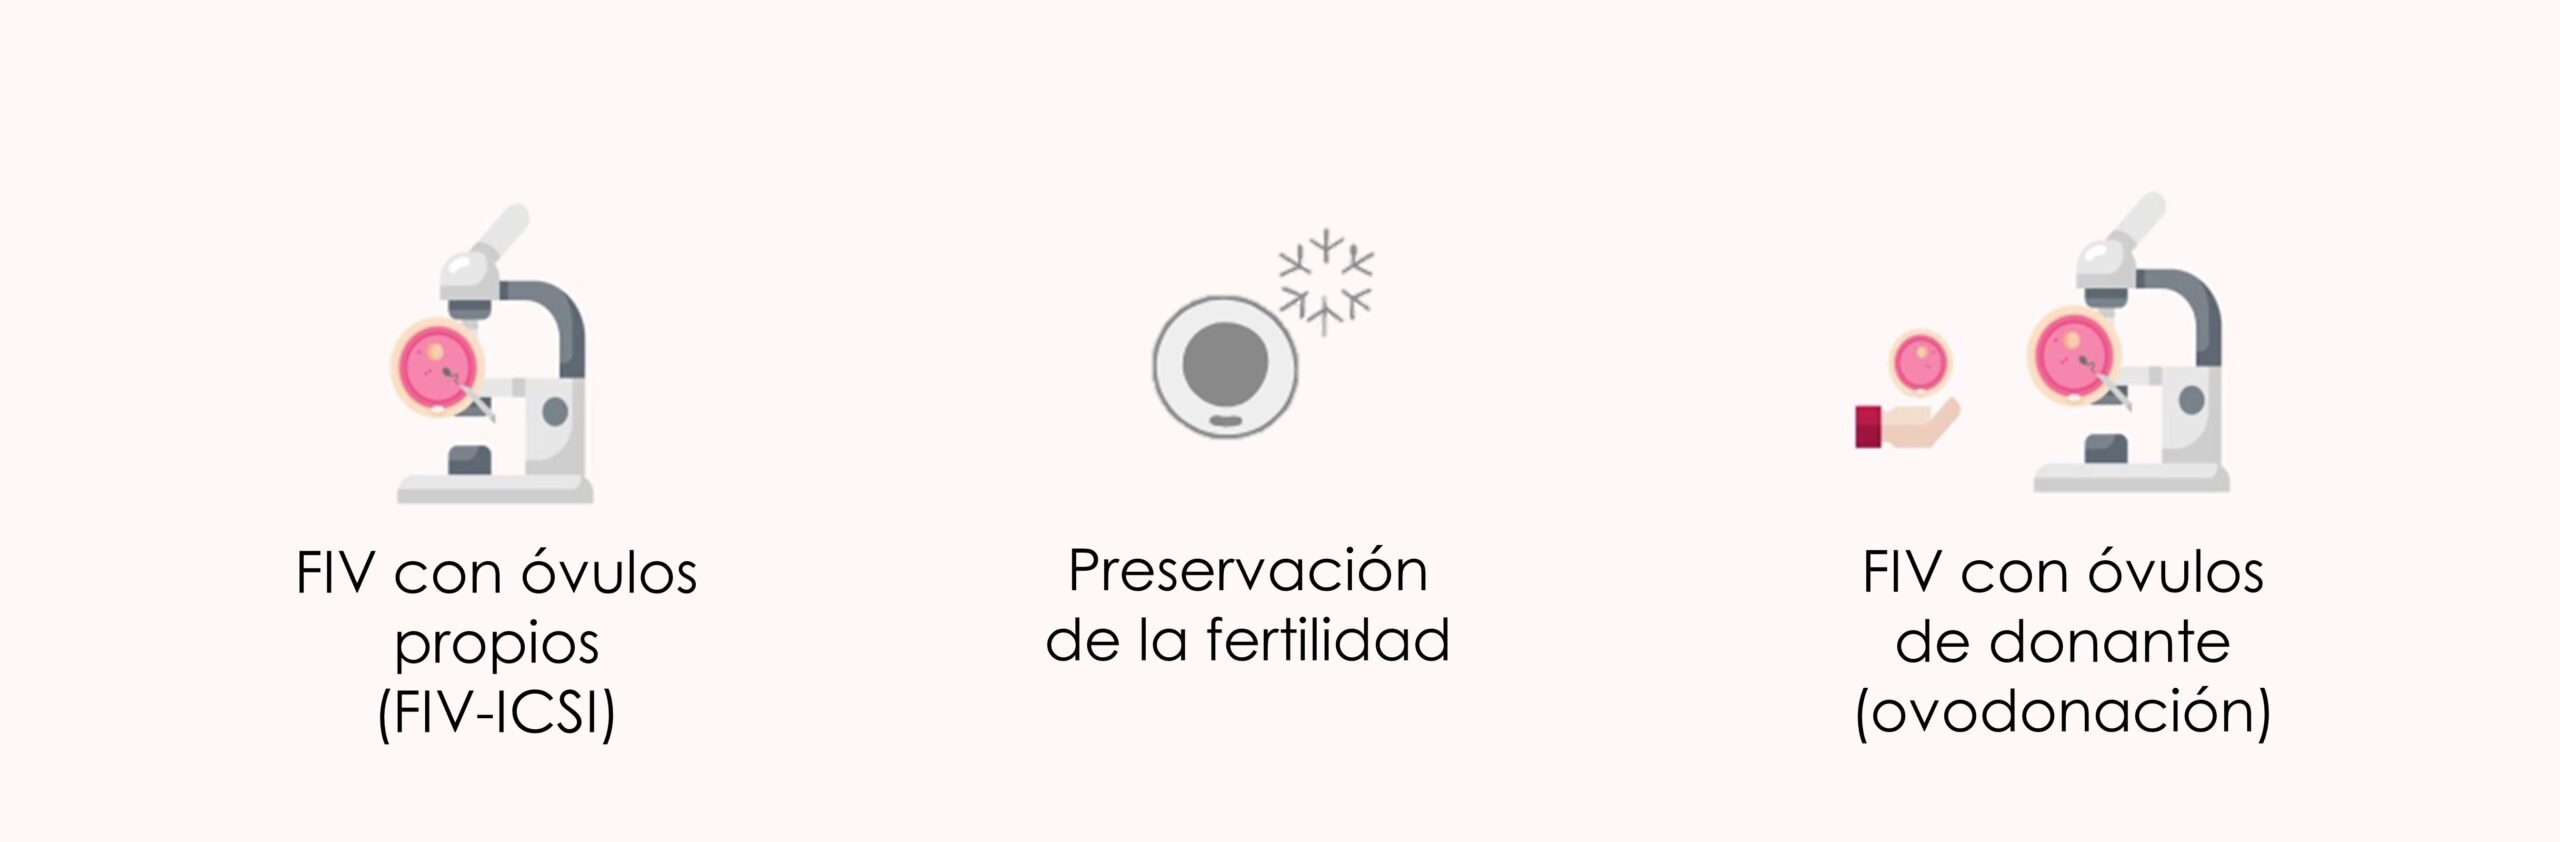 Amenorrea y embarazo por reproducción asistida